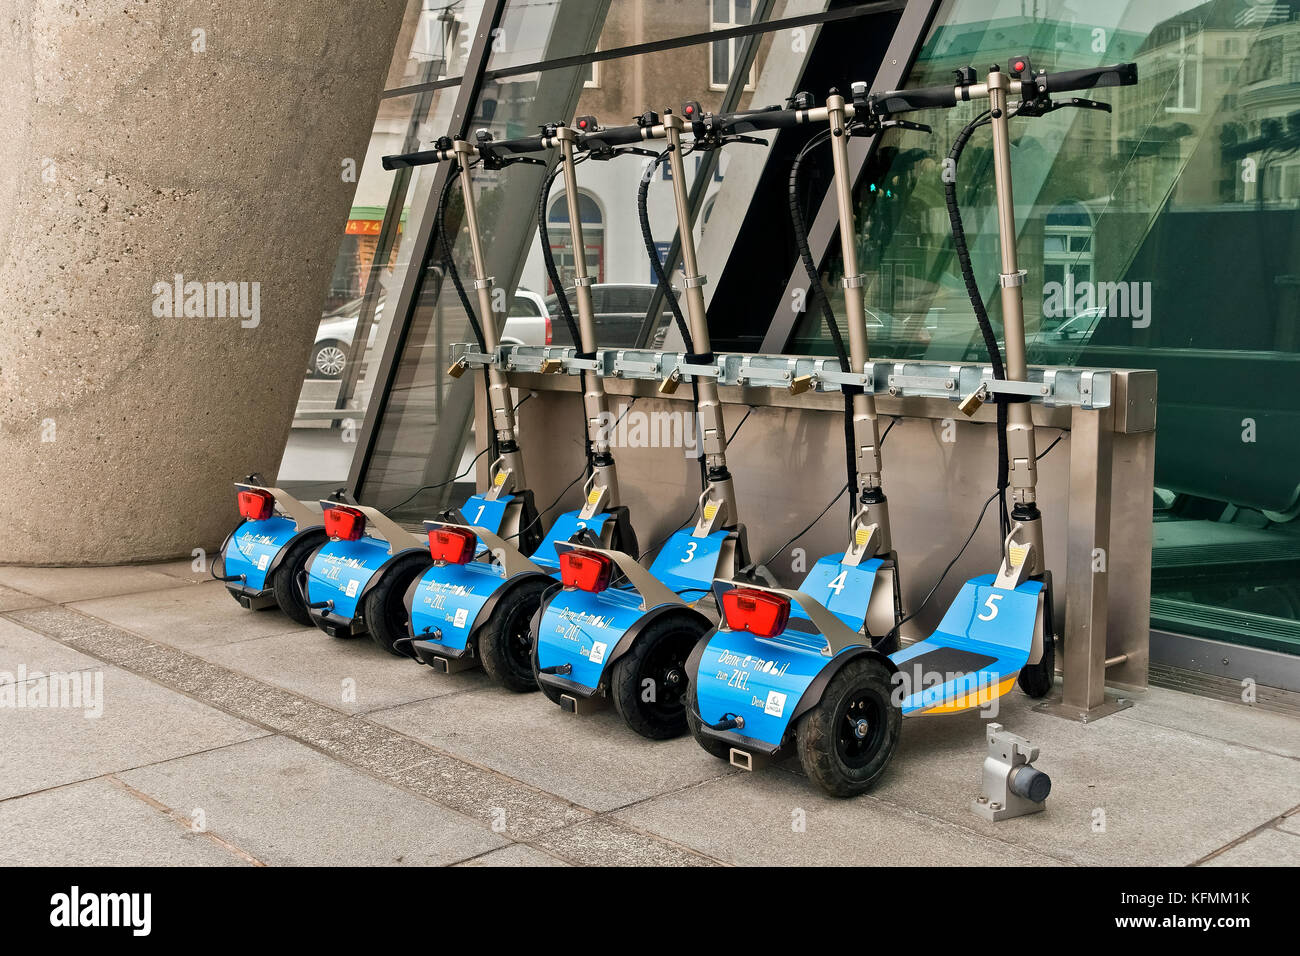 UNICA empresa de seguros eléctricos desechables empuje scooter aparcado junto al edificio de la sede de la puerta. Respetuoso con el medio ambiente. Viena Wien, Austria, Europa Foto de stock